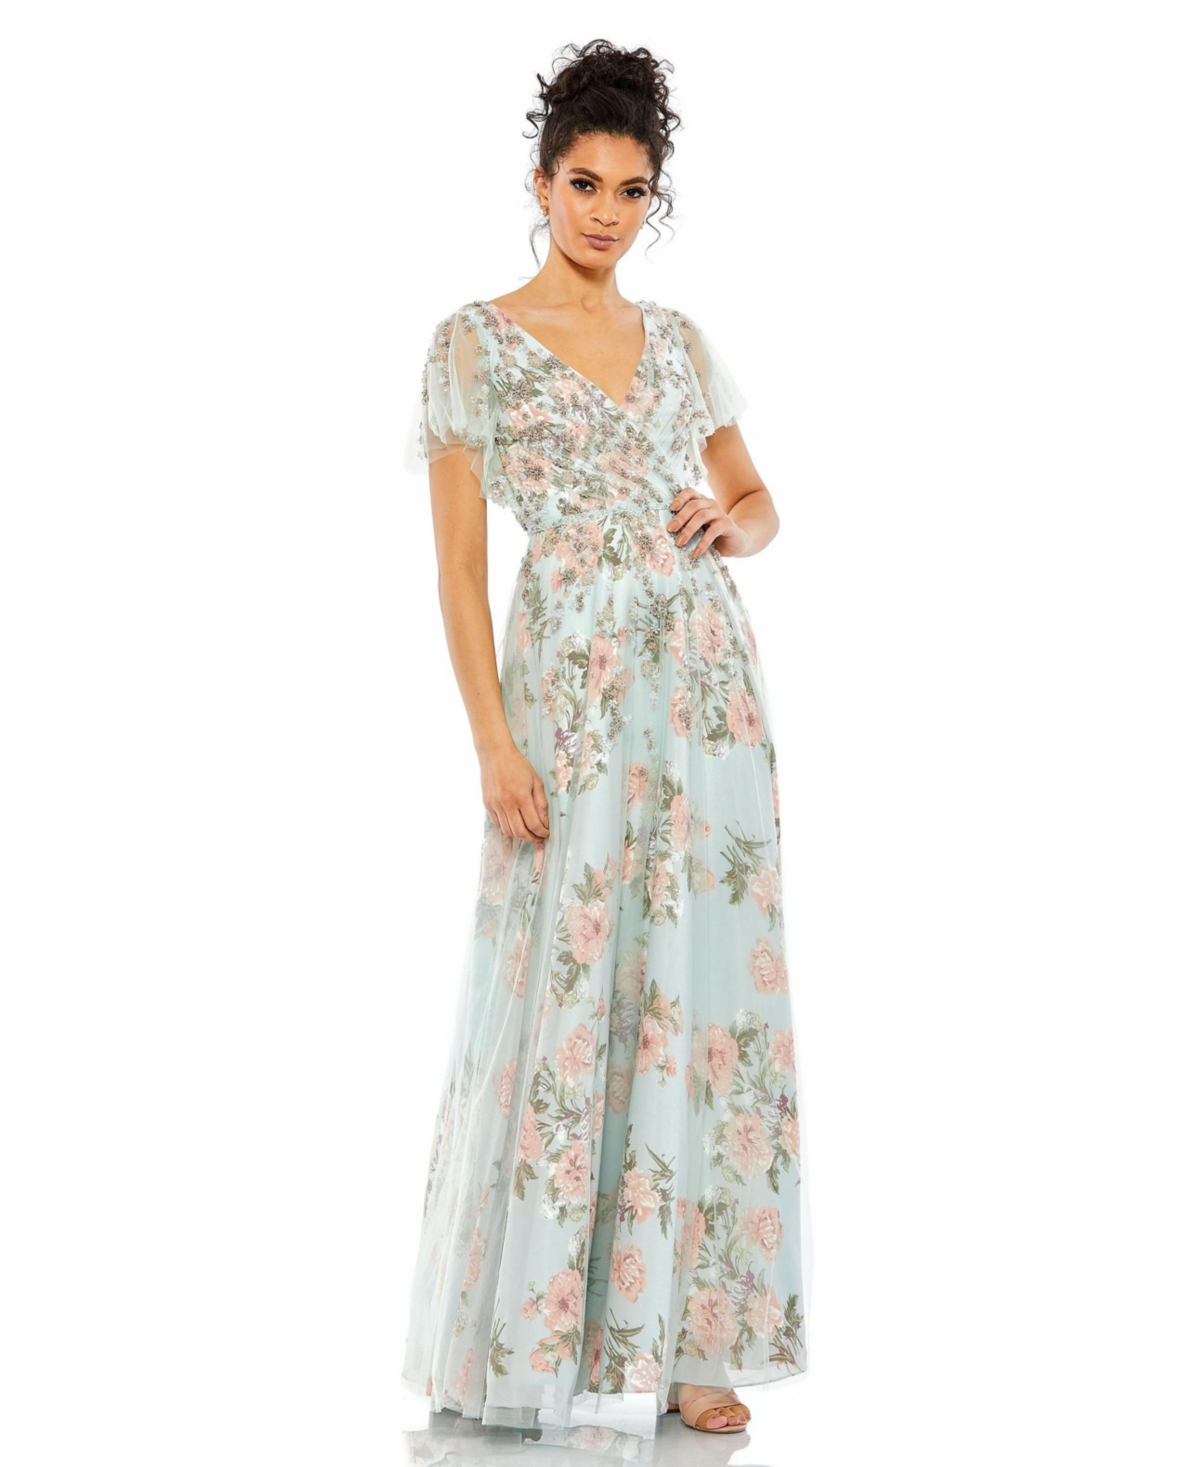 Buy Boardwalk Empire Inspired Dresses Womens Floral Flutter Sleeve V-Neck Maxi Dress - Blue multi $458.00 AT vintagedancer.com